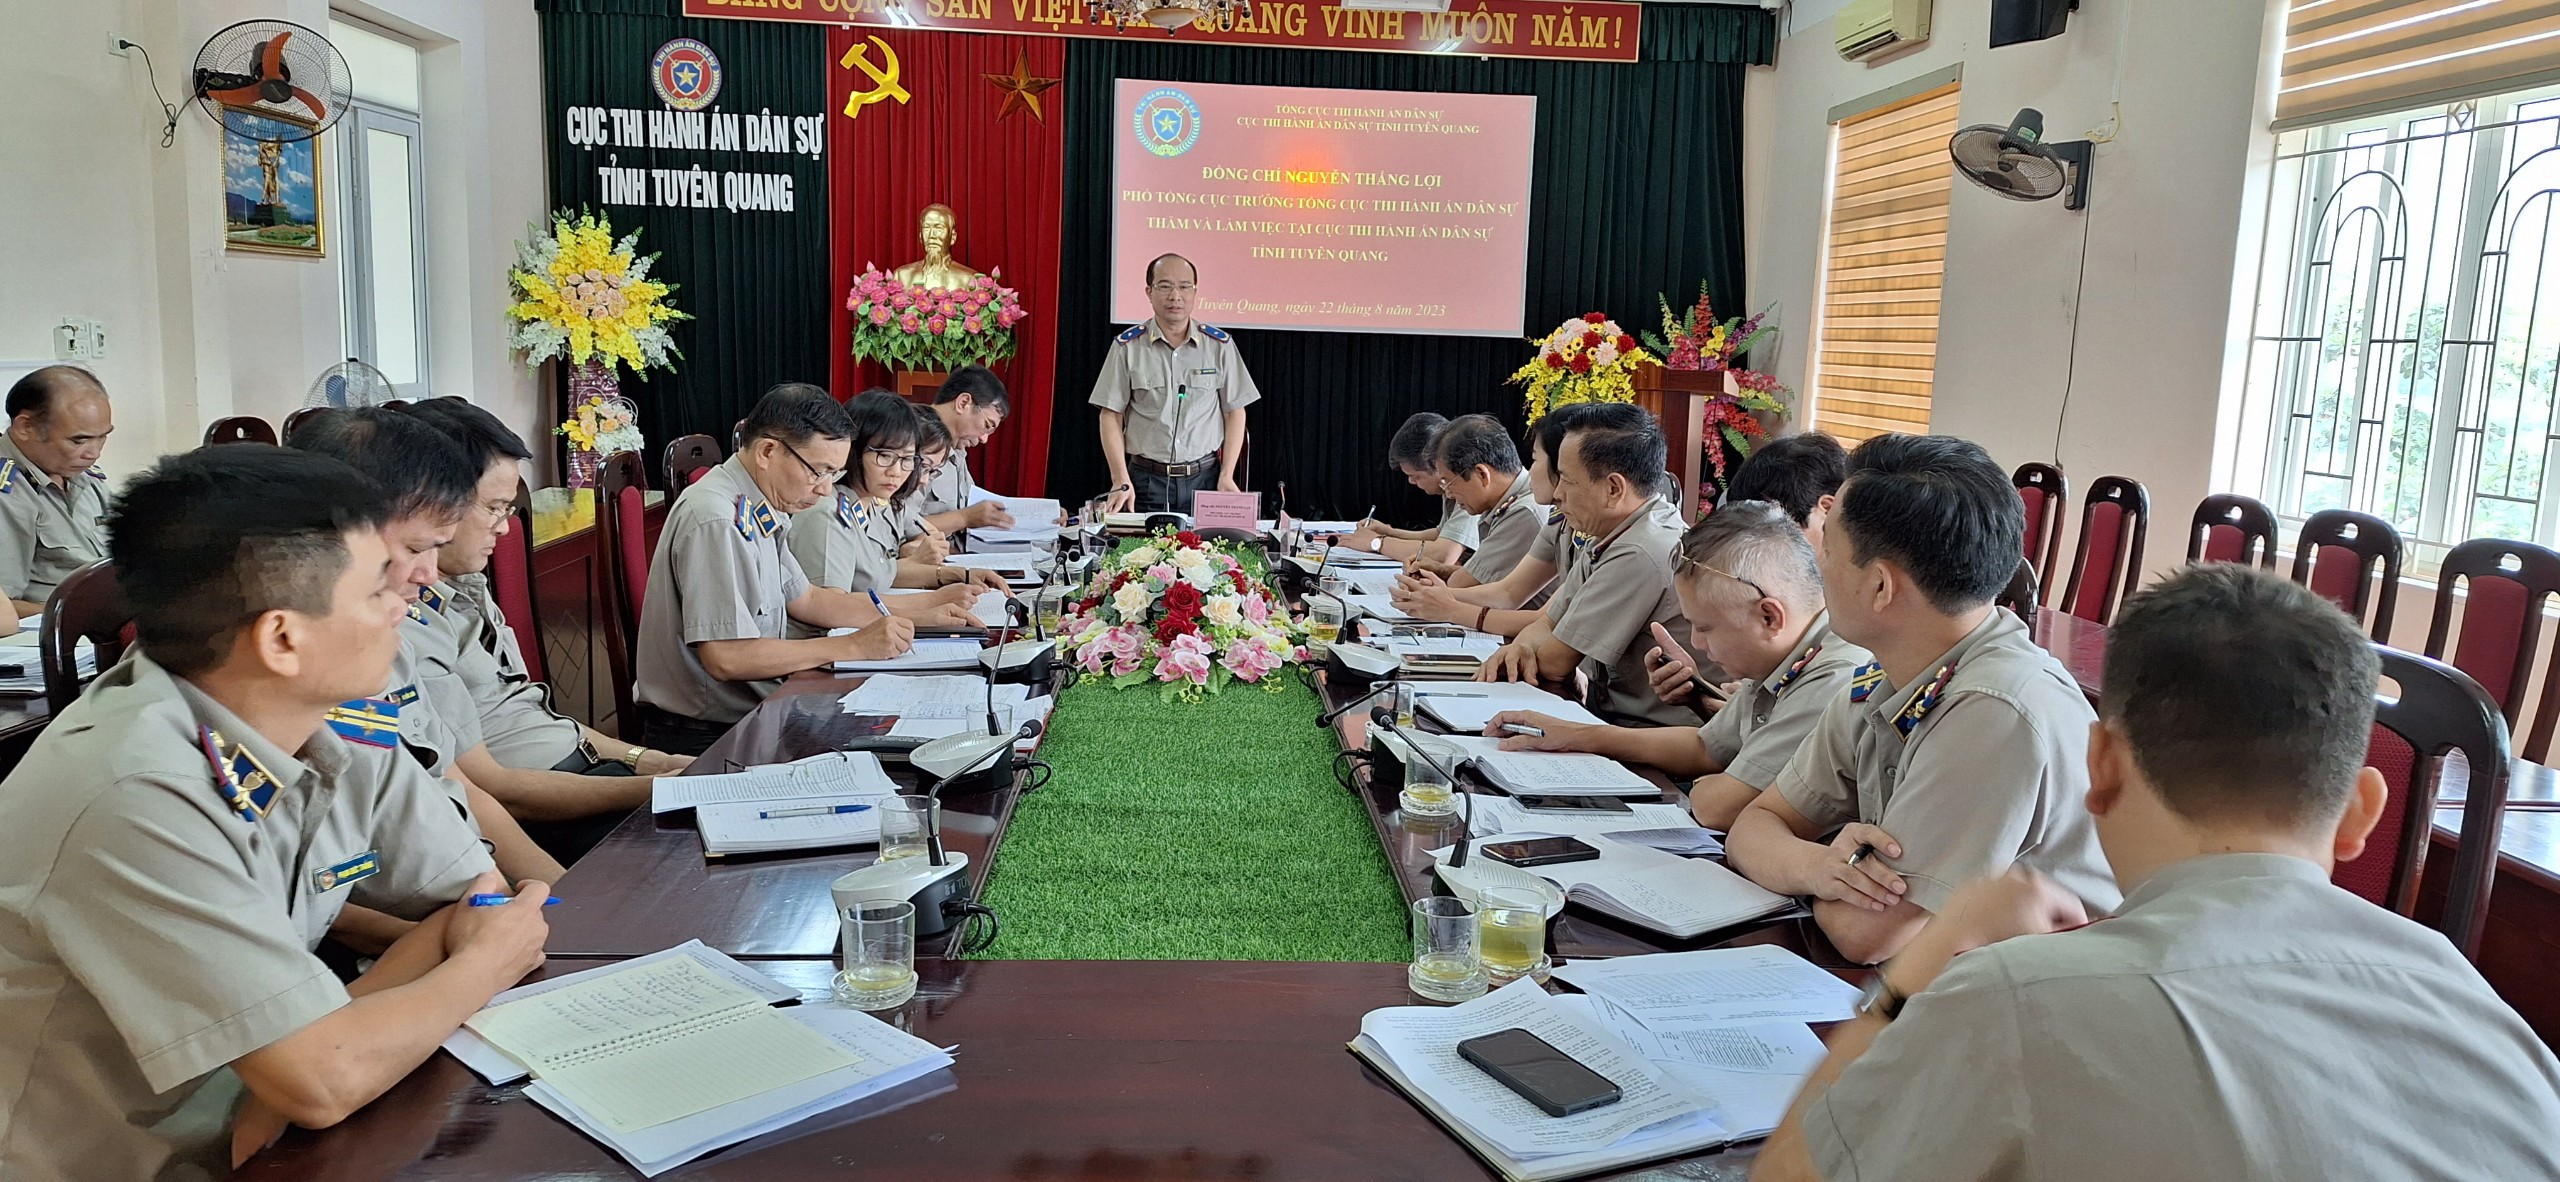 Đồng chí Phó Tổng cục trưởng Tổng cục Thi hành án dân sự Nguyễn Thắng Lợi làm việc tại Cục Thi hành án dân sự tỉnh Tuyên Quang.